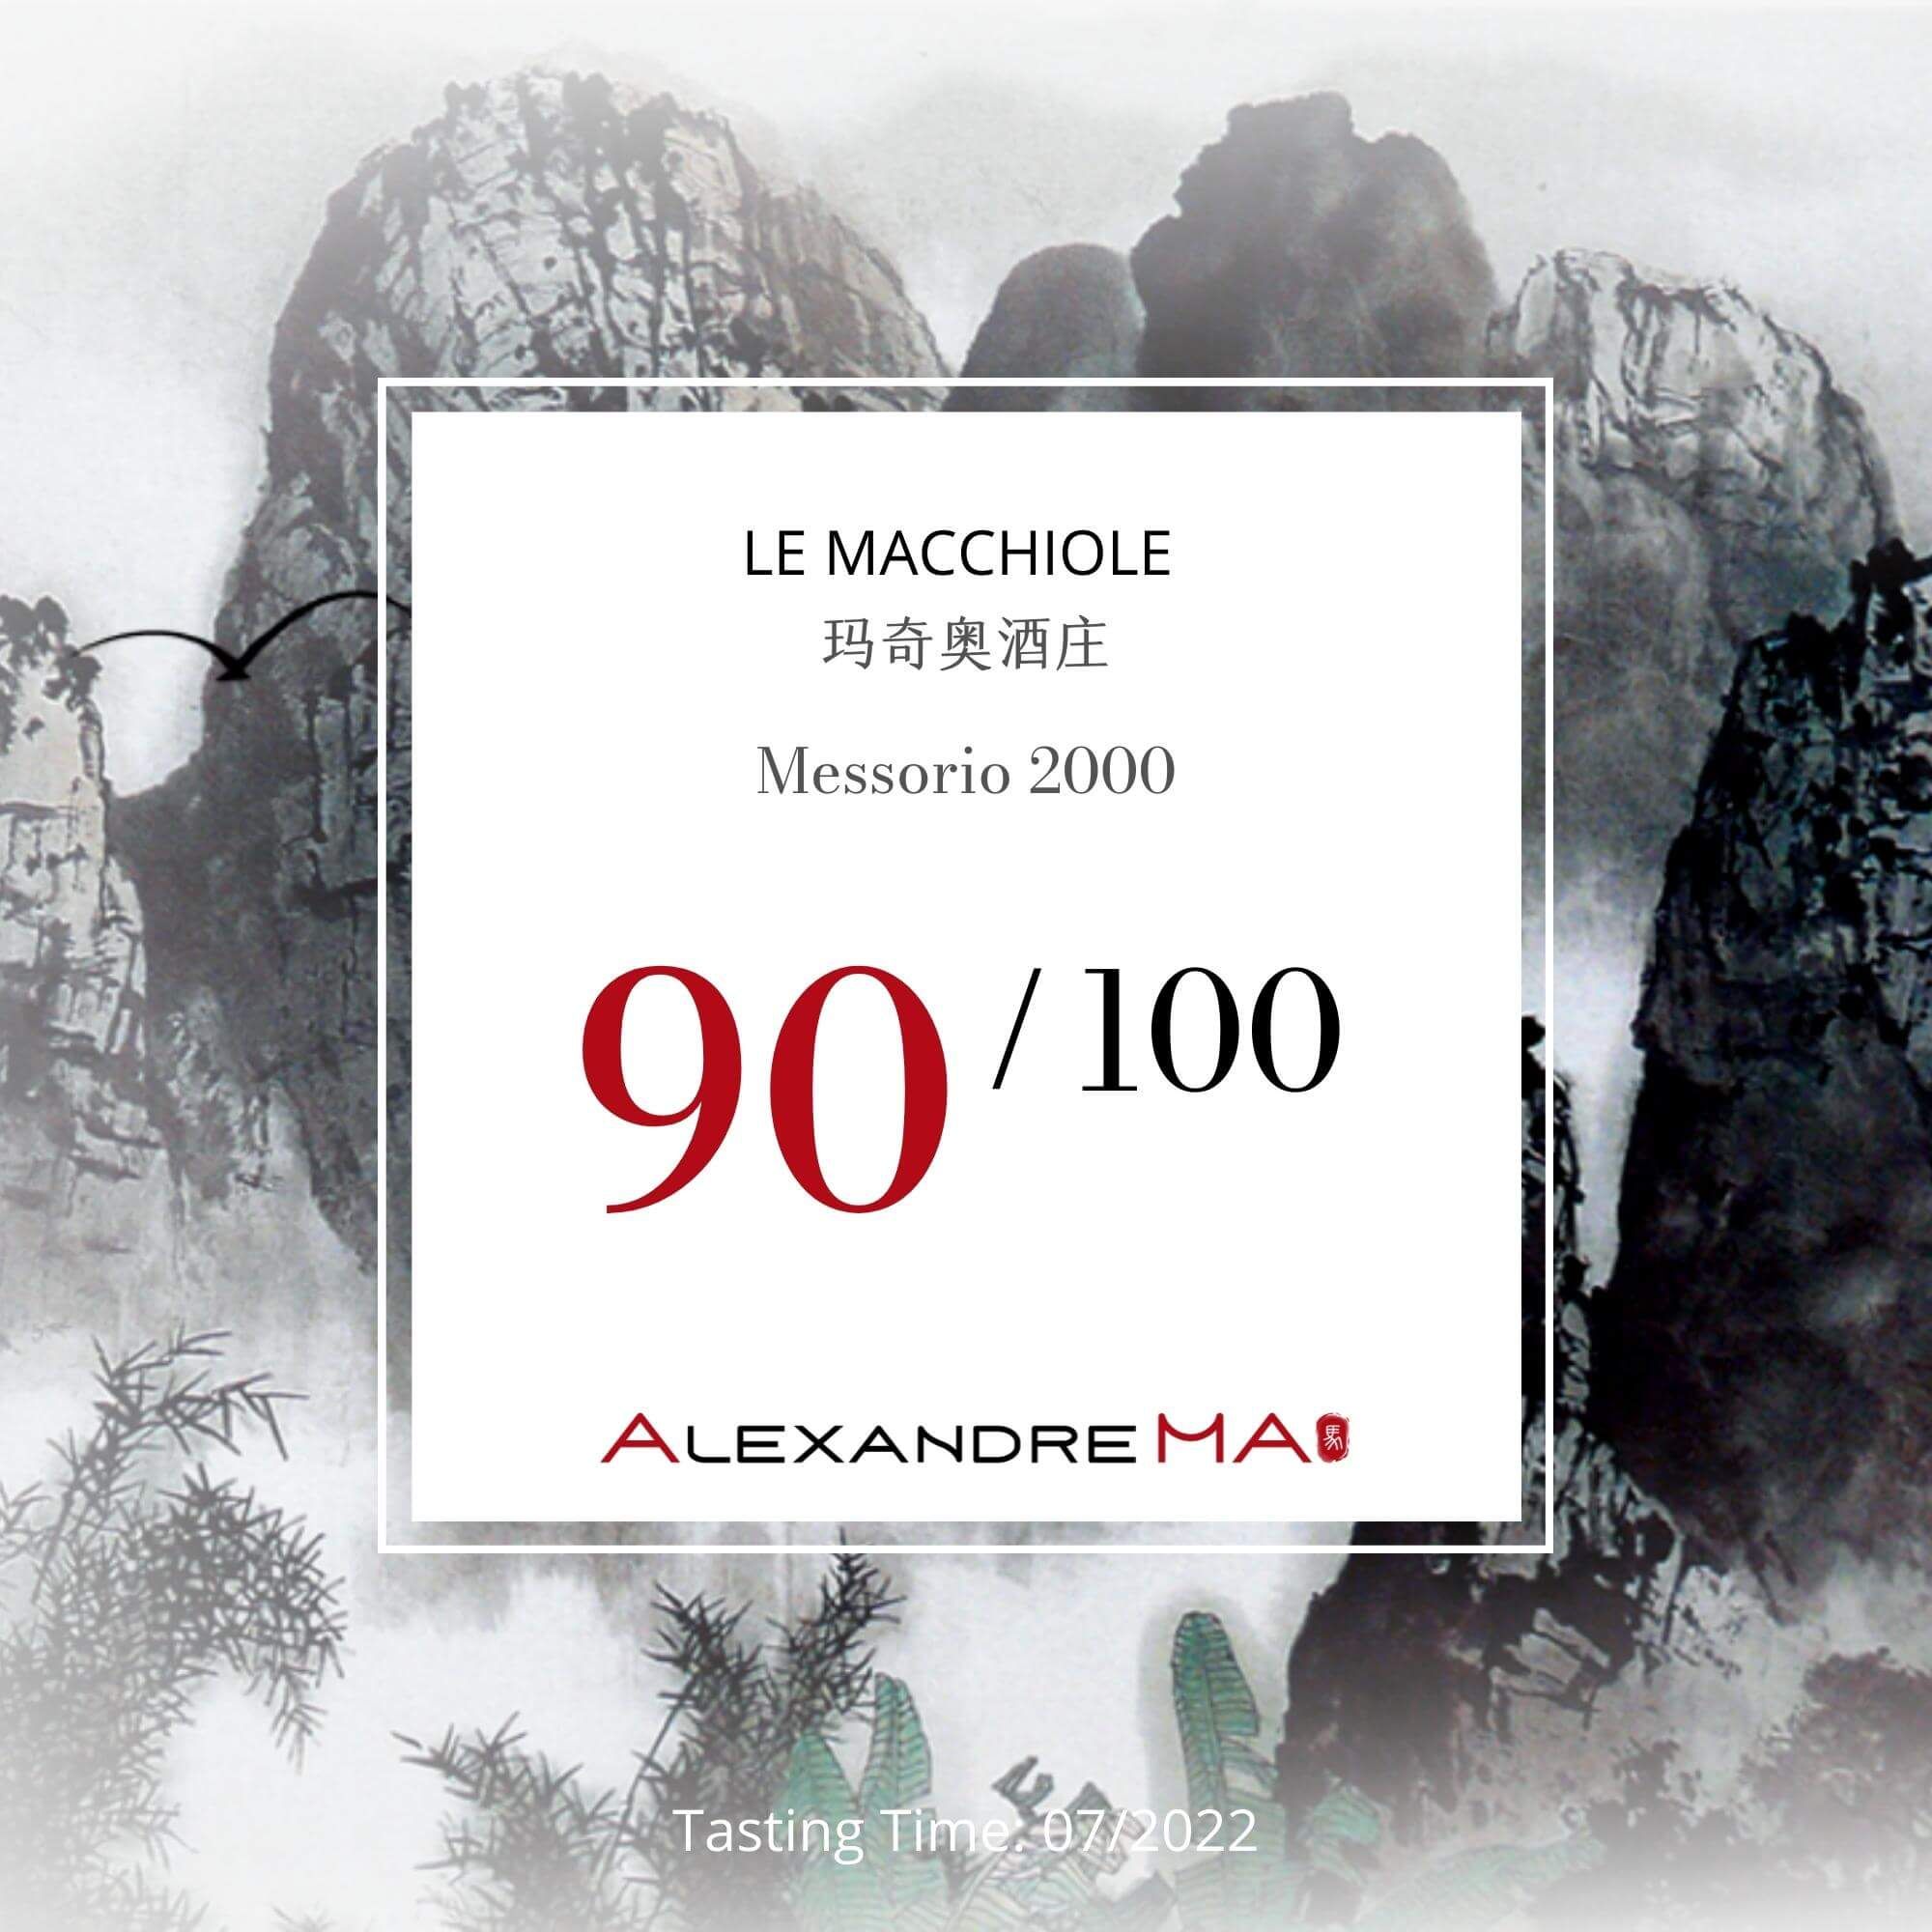 Le Macchiole Messorio 2000 玛奇奥酒庄 - Alexandre Ma